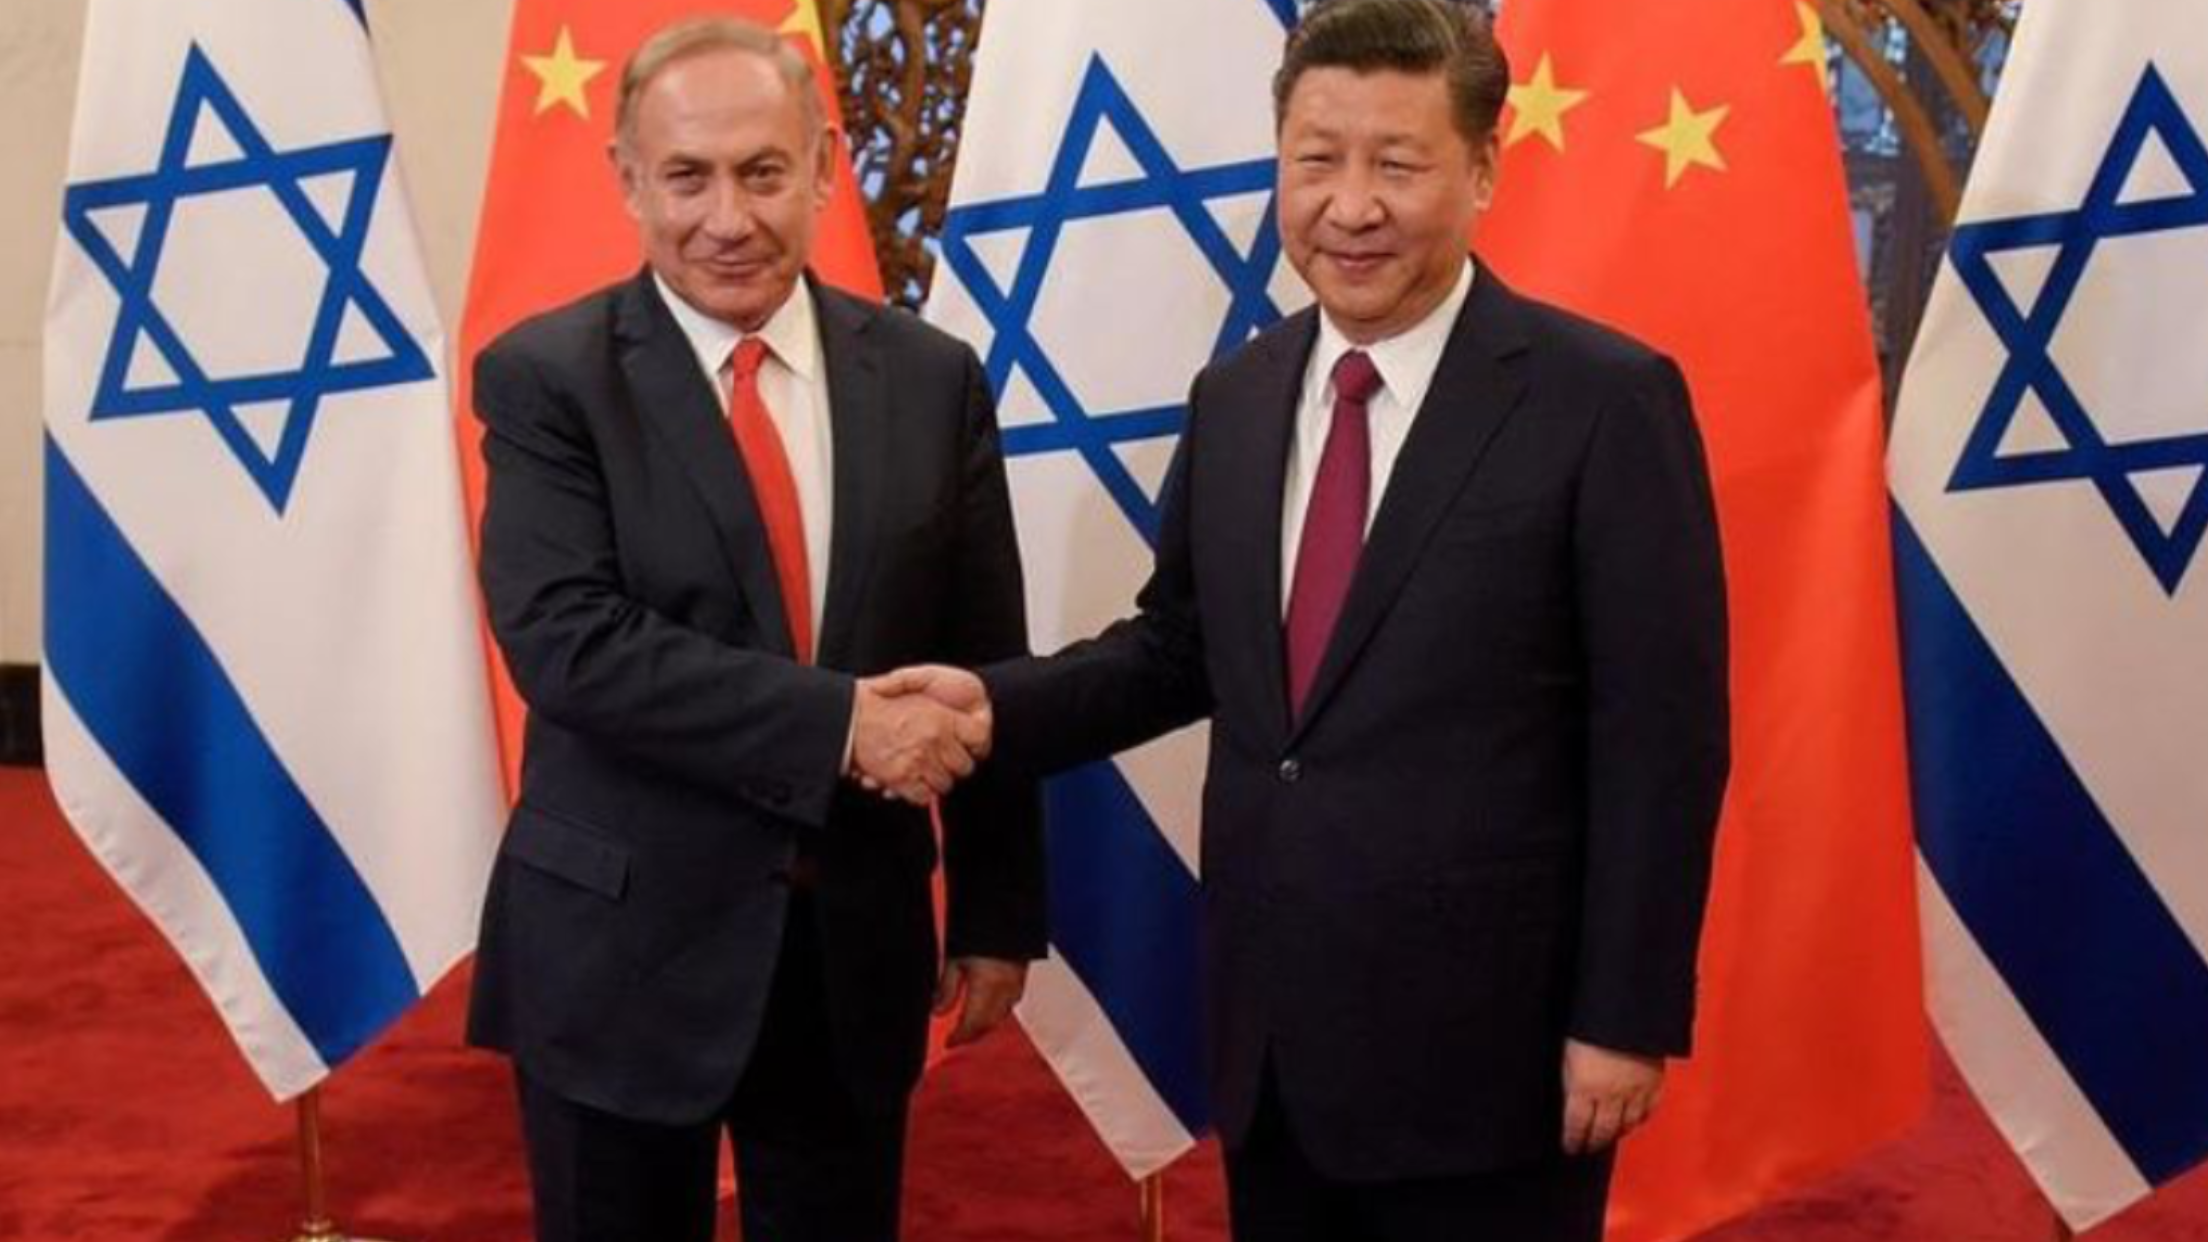 Le relazioni cordiali fra Israele e Cina, e l’imperante fastidio  mostrato dagli Usa